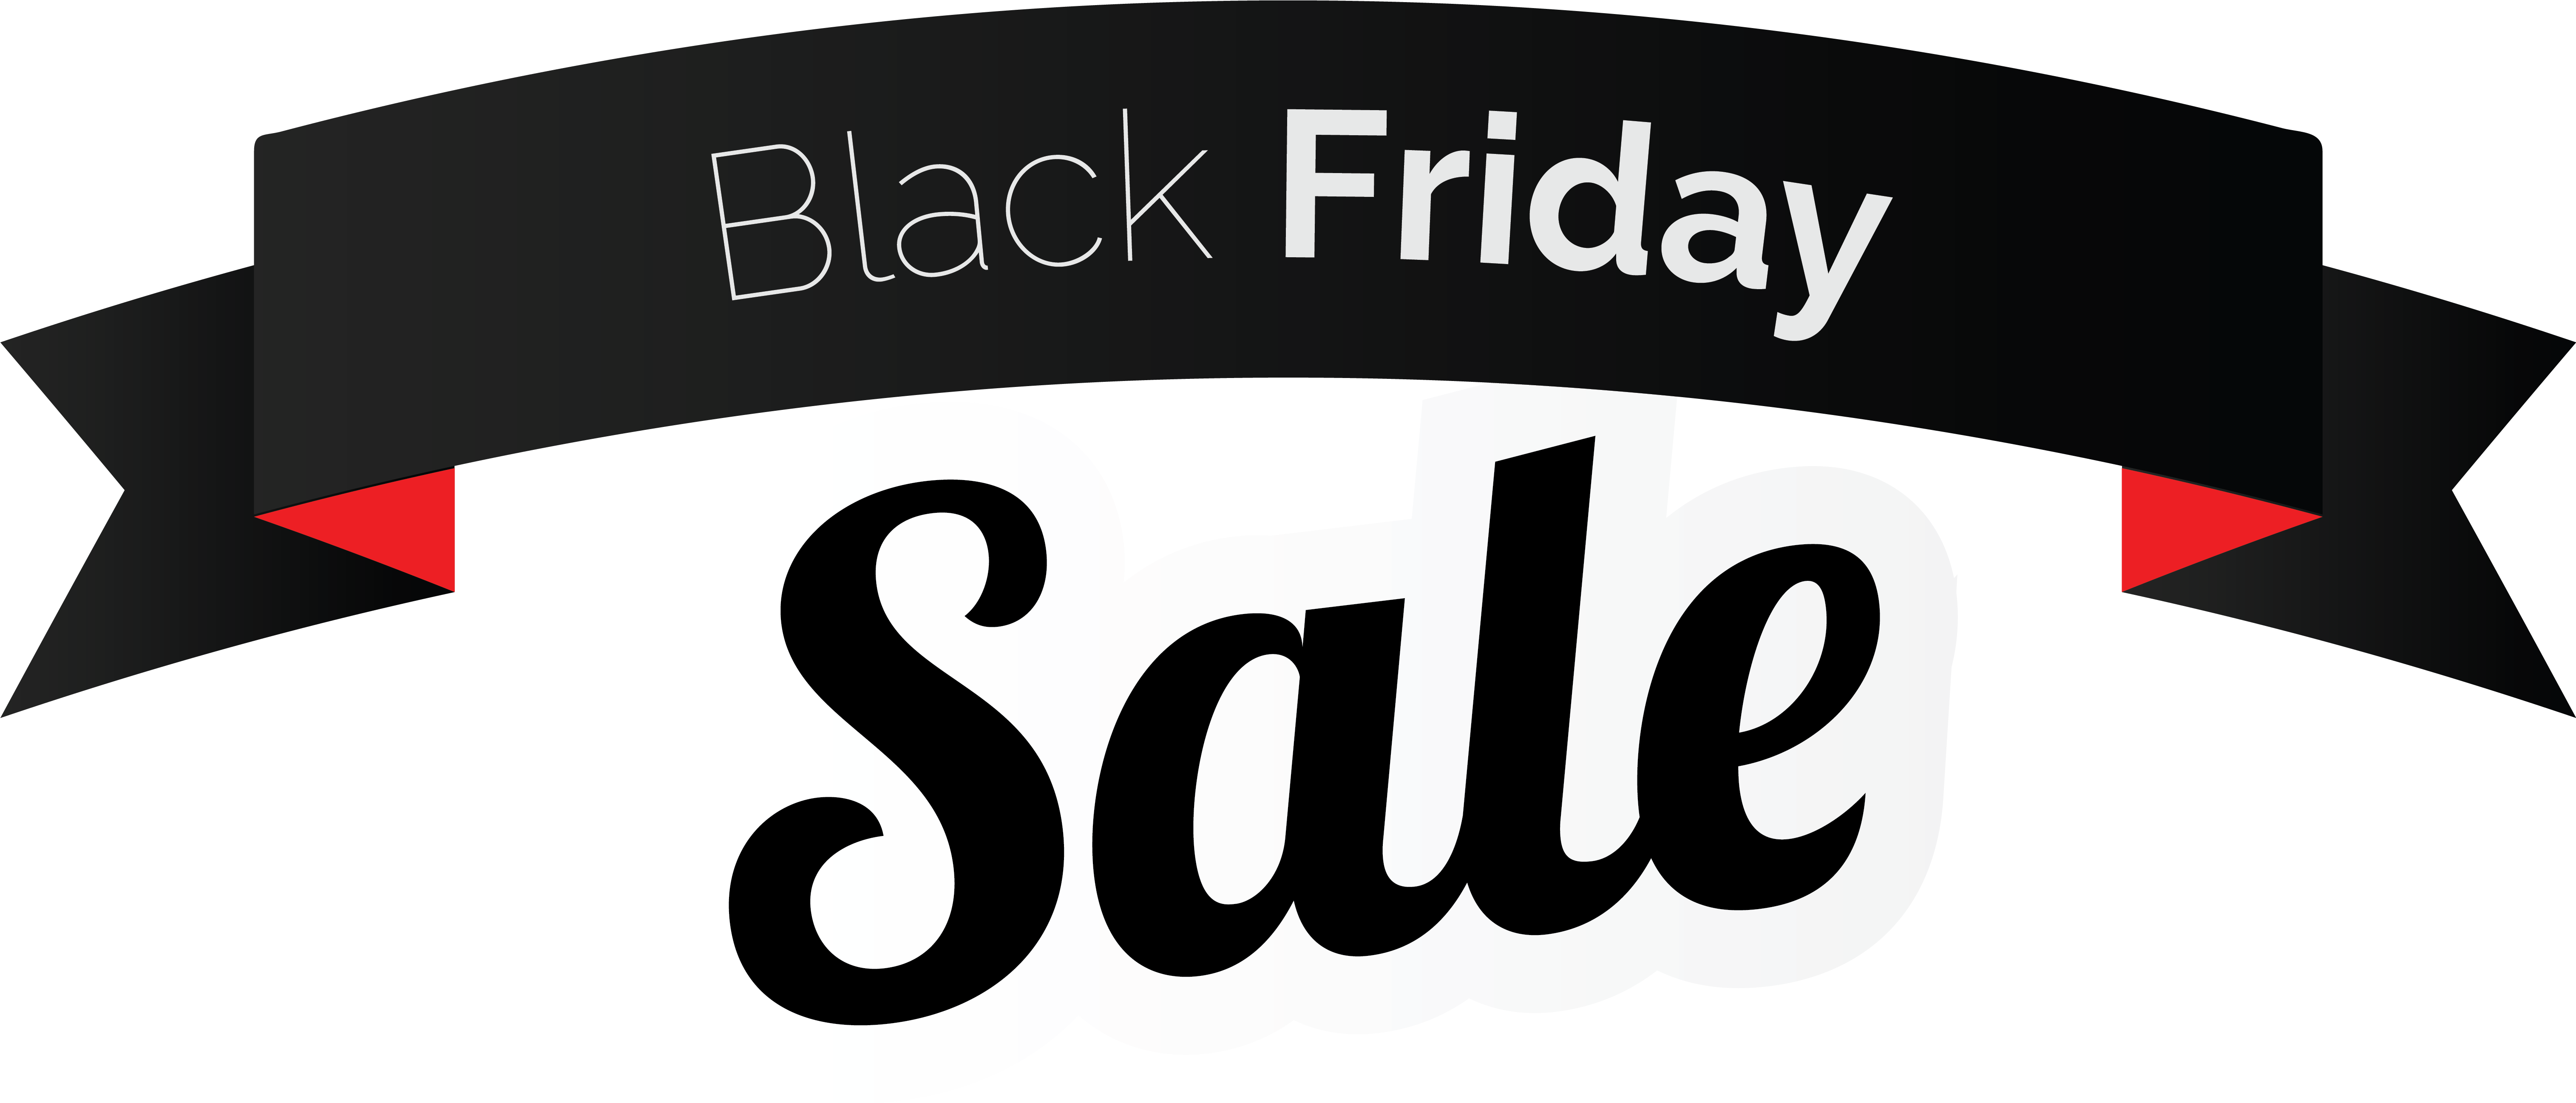 Black Friday Sale PNG Image Background